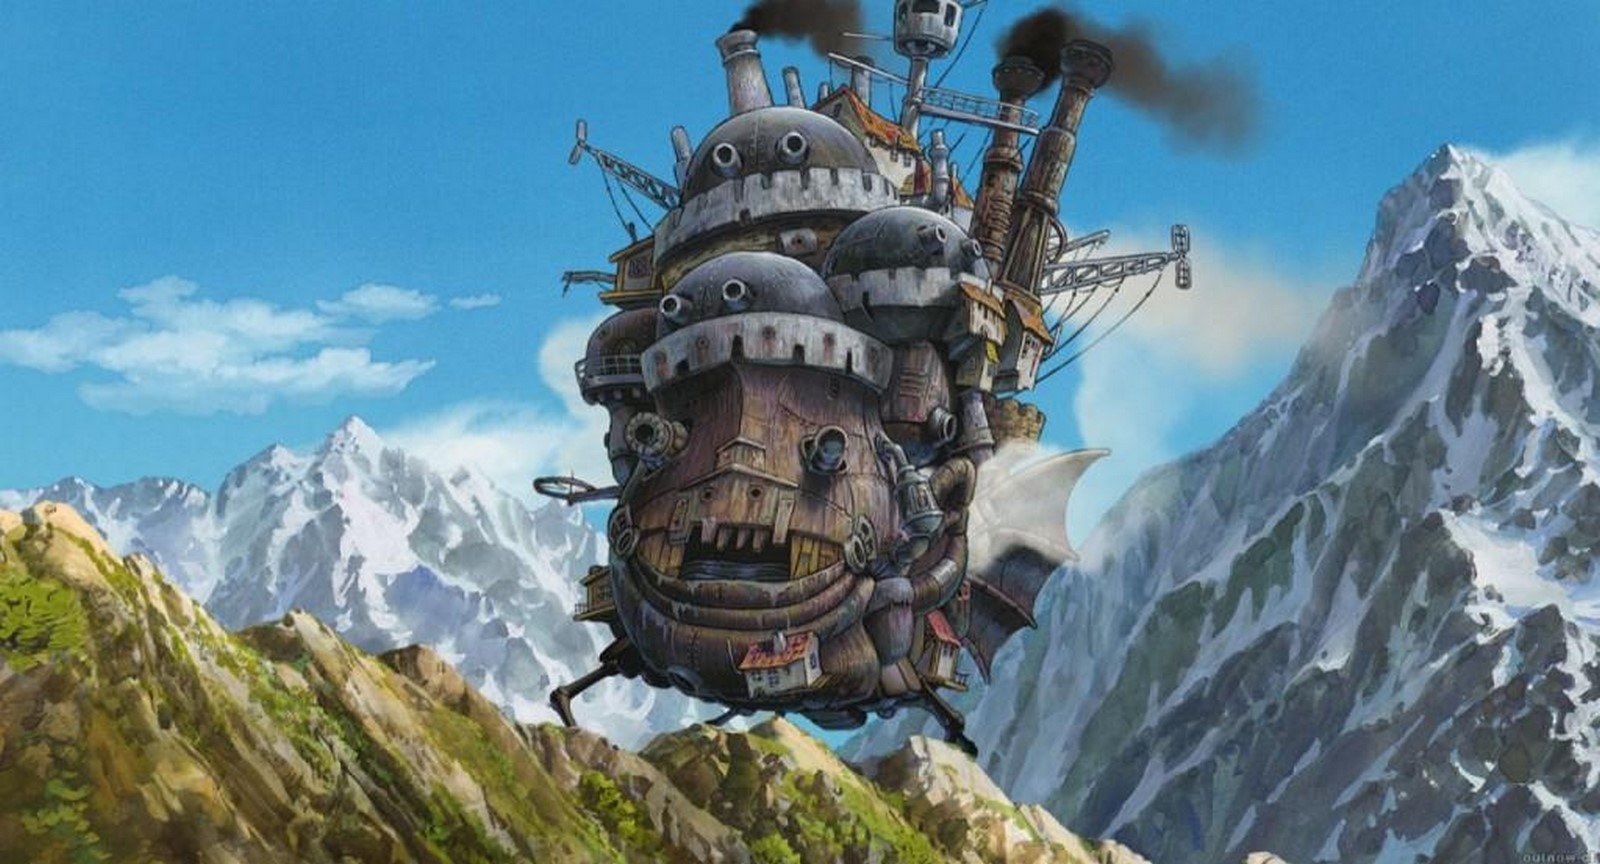 Anime Buildings - Howl’s Moving Castle | 2004 | Fantasy - Sheet5